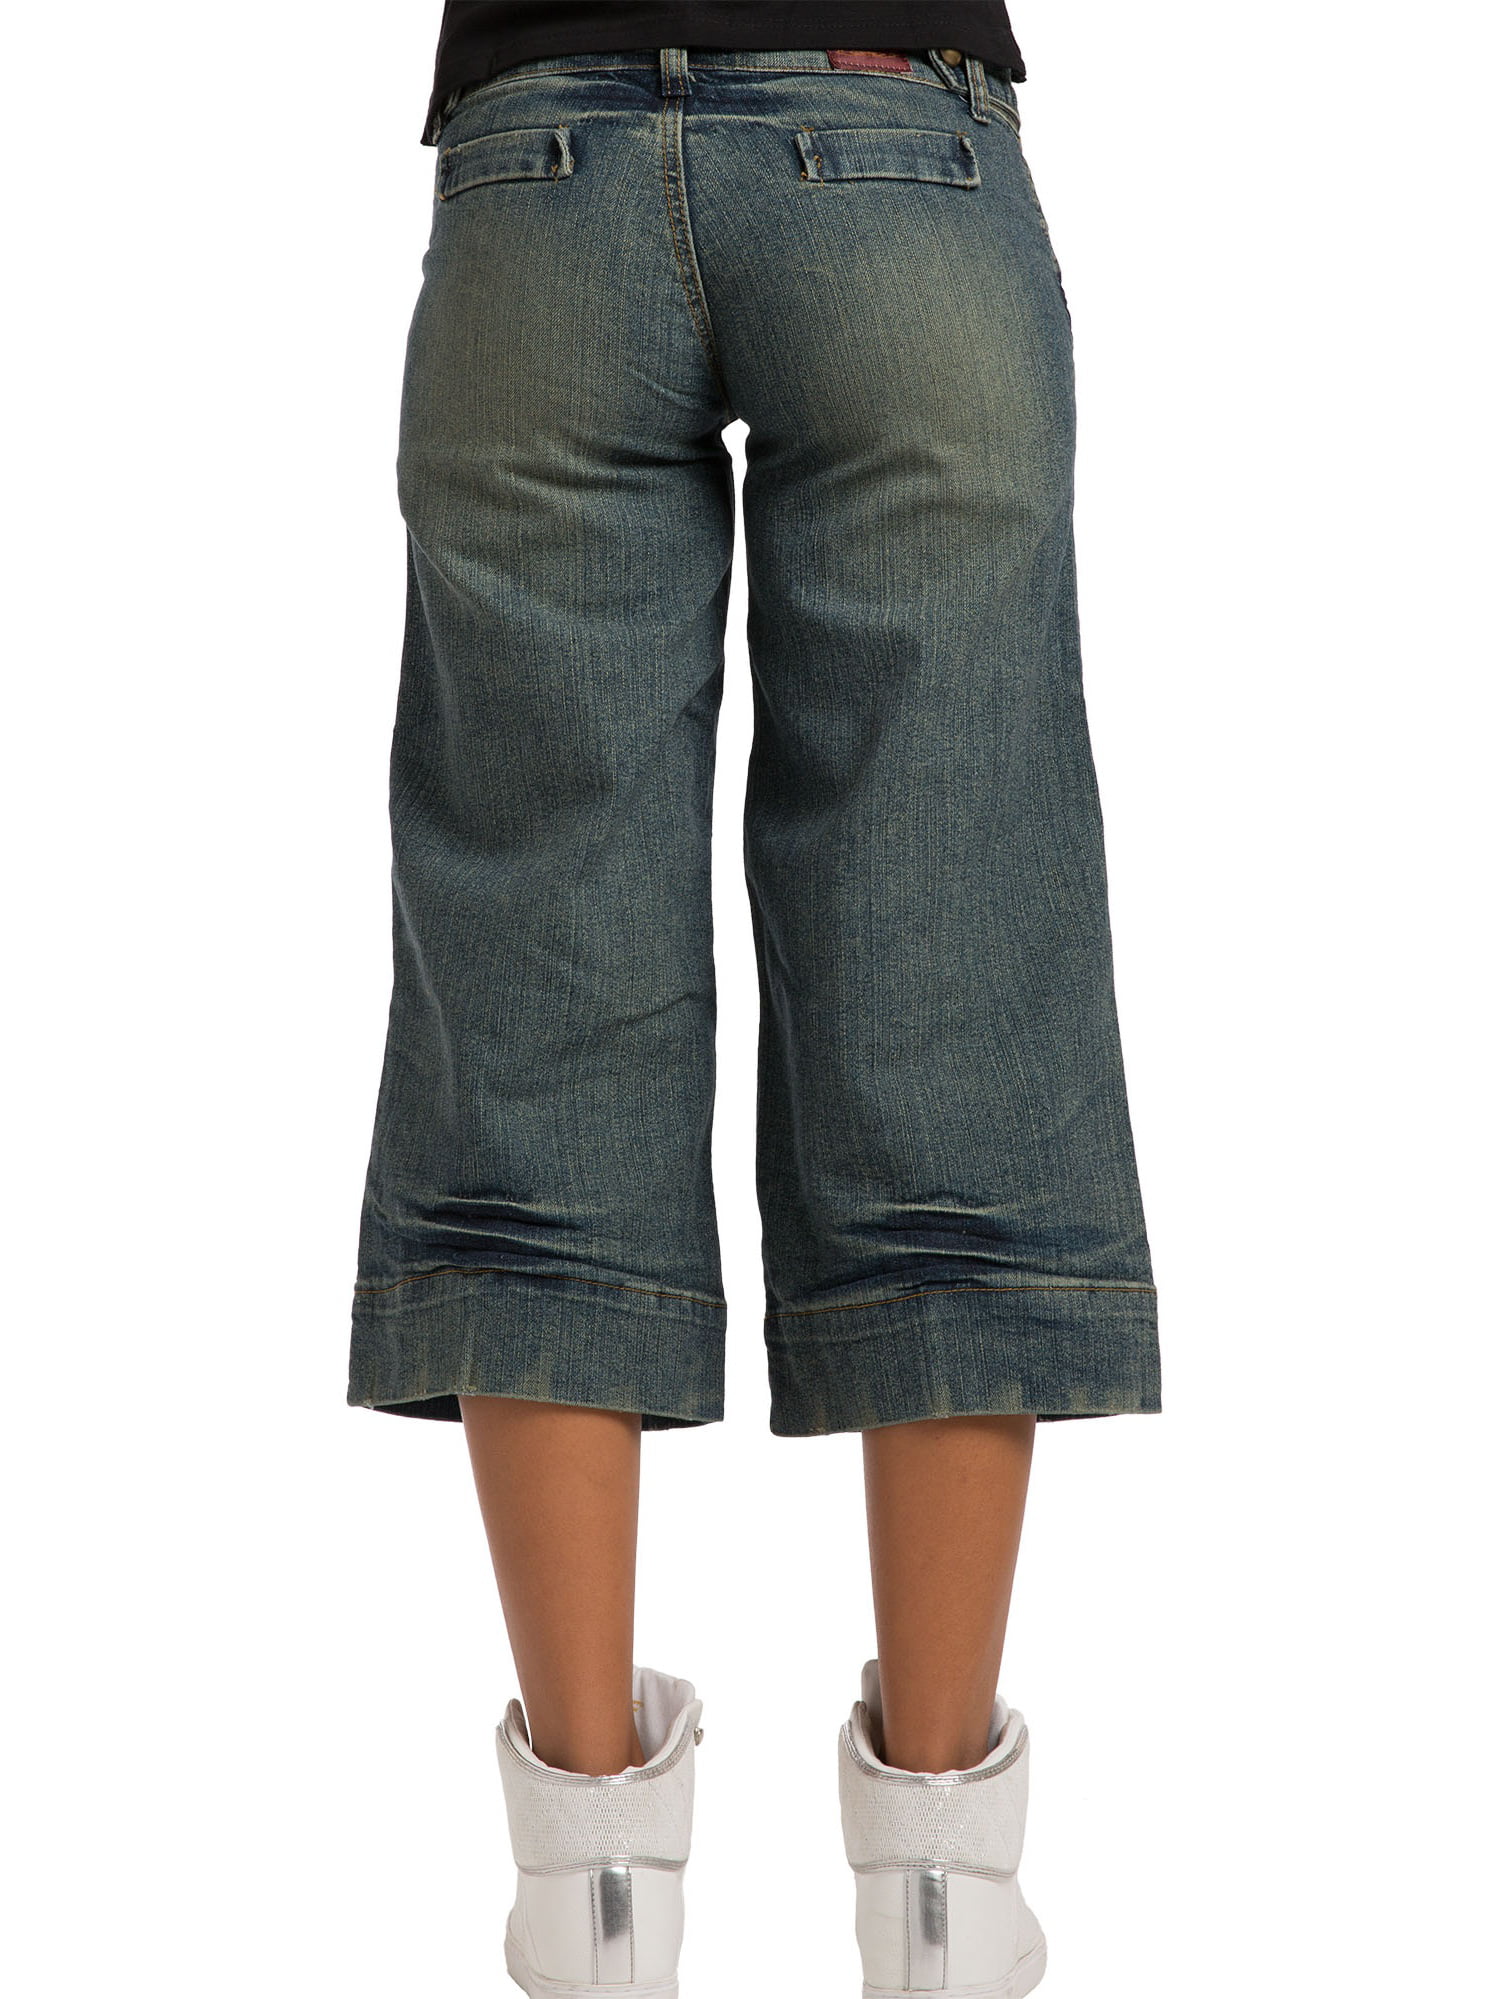 gaucho jeans capris